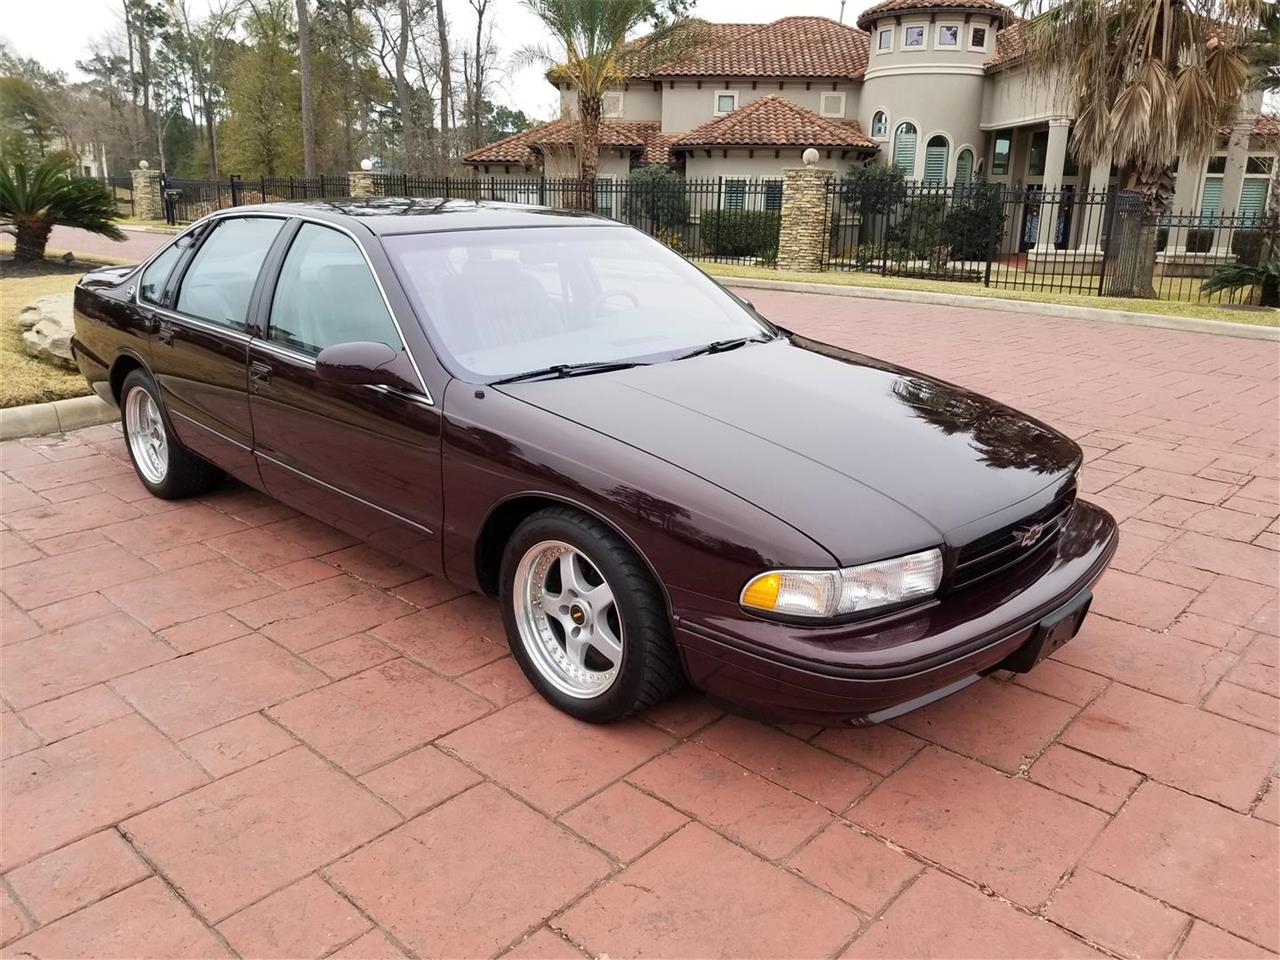 1996 Chevrolet Impala SS for Sale | ClassicCars.com | CC-1060835